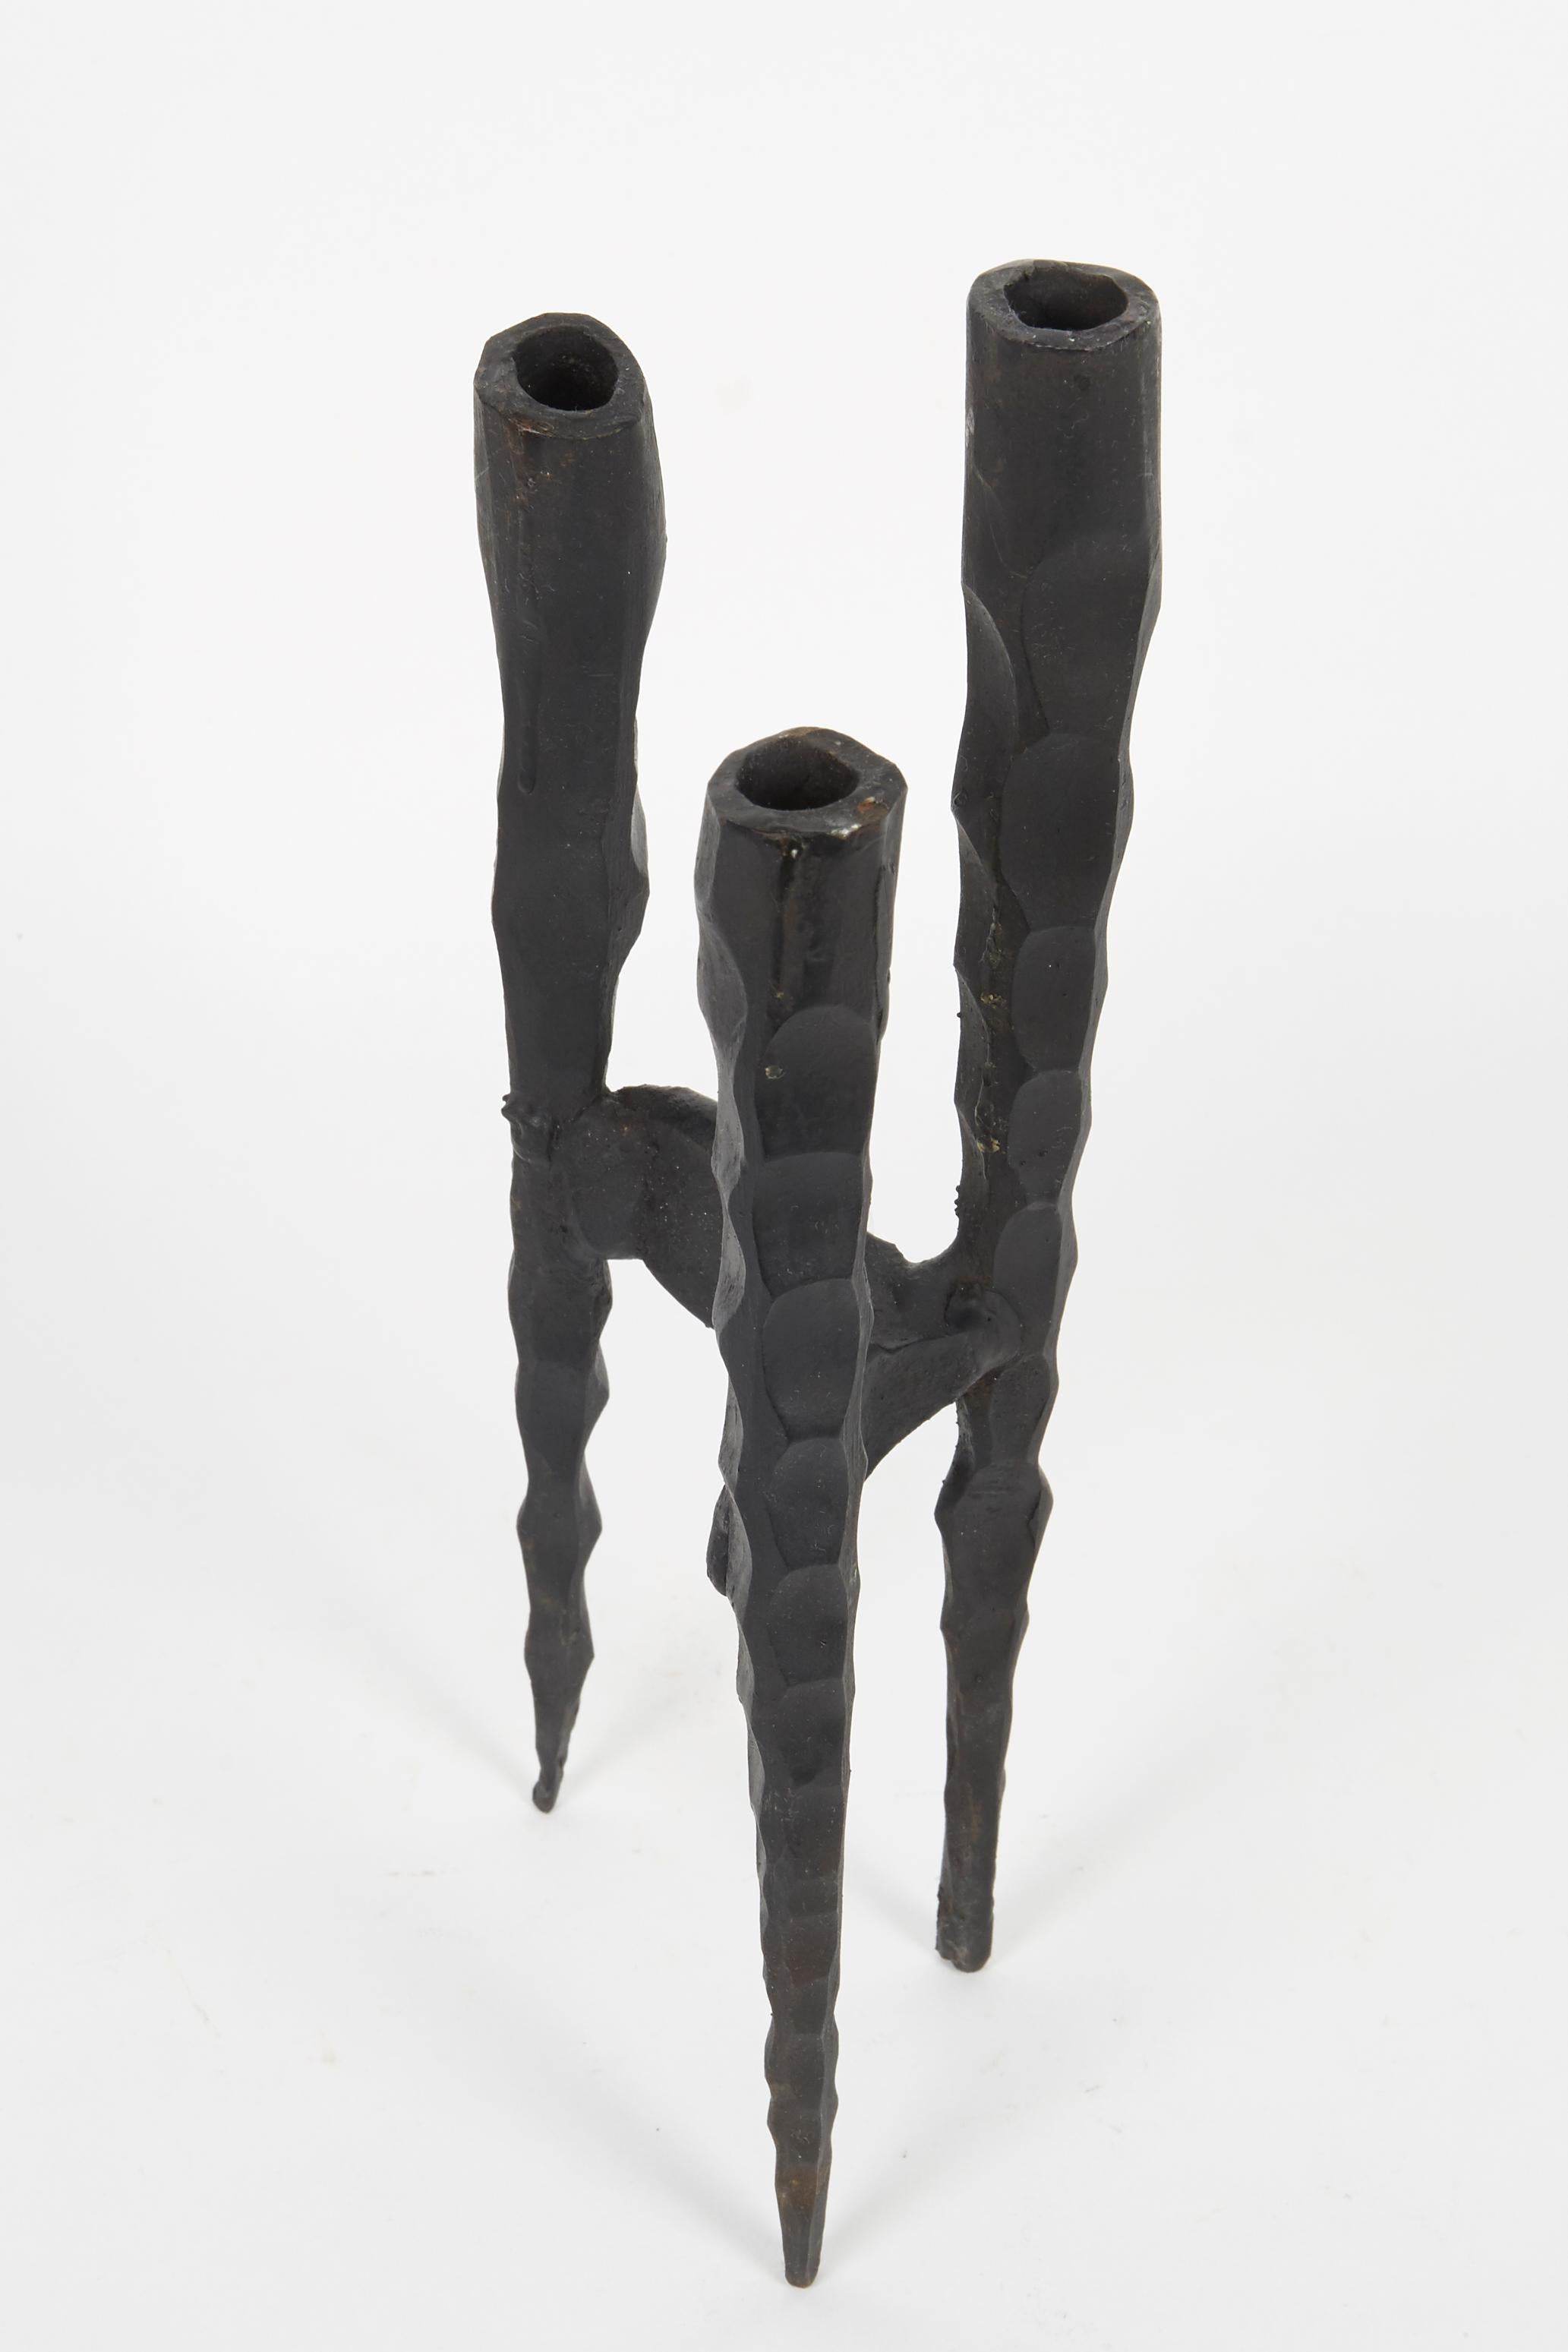 Kleiner Shabbat-Kerzenhalter aus Eisen im brutalistischen Stil von David Palombo. Die für drei Kerzen ausgelegten Halter laufen in der Mitte zusammen und bilden so eine zusammenhängende, konische Form. 

David Palombo (1920-1966) war ein in der